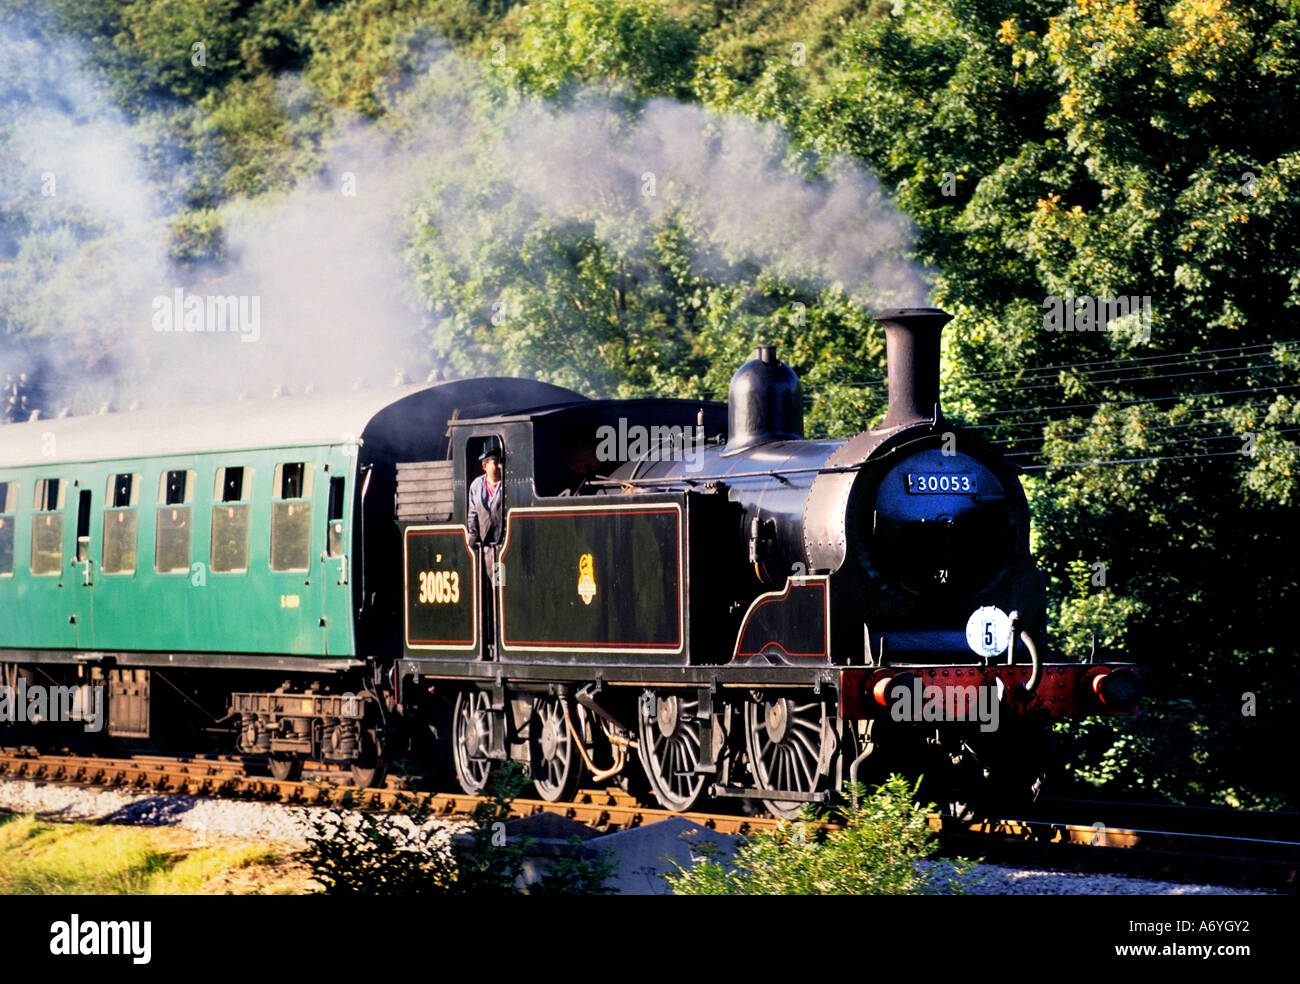 North Wales Steam Train Vereinigte Königreich Eisenbahn Stockfoto